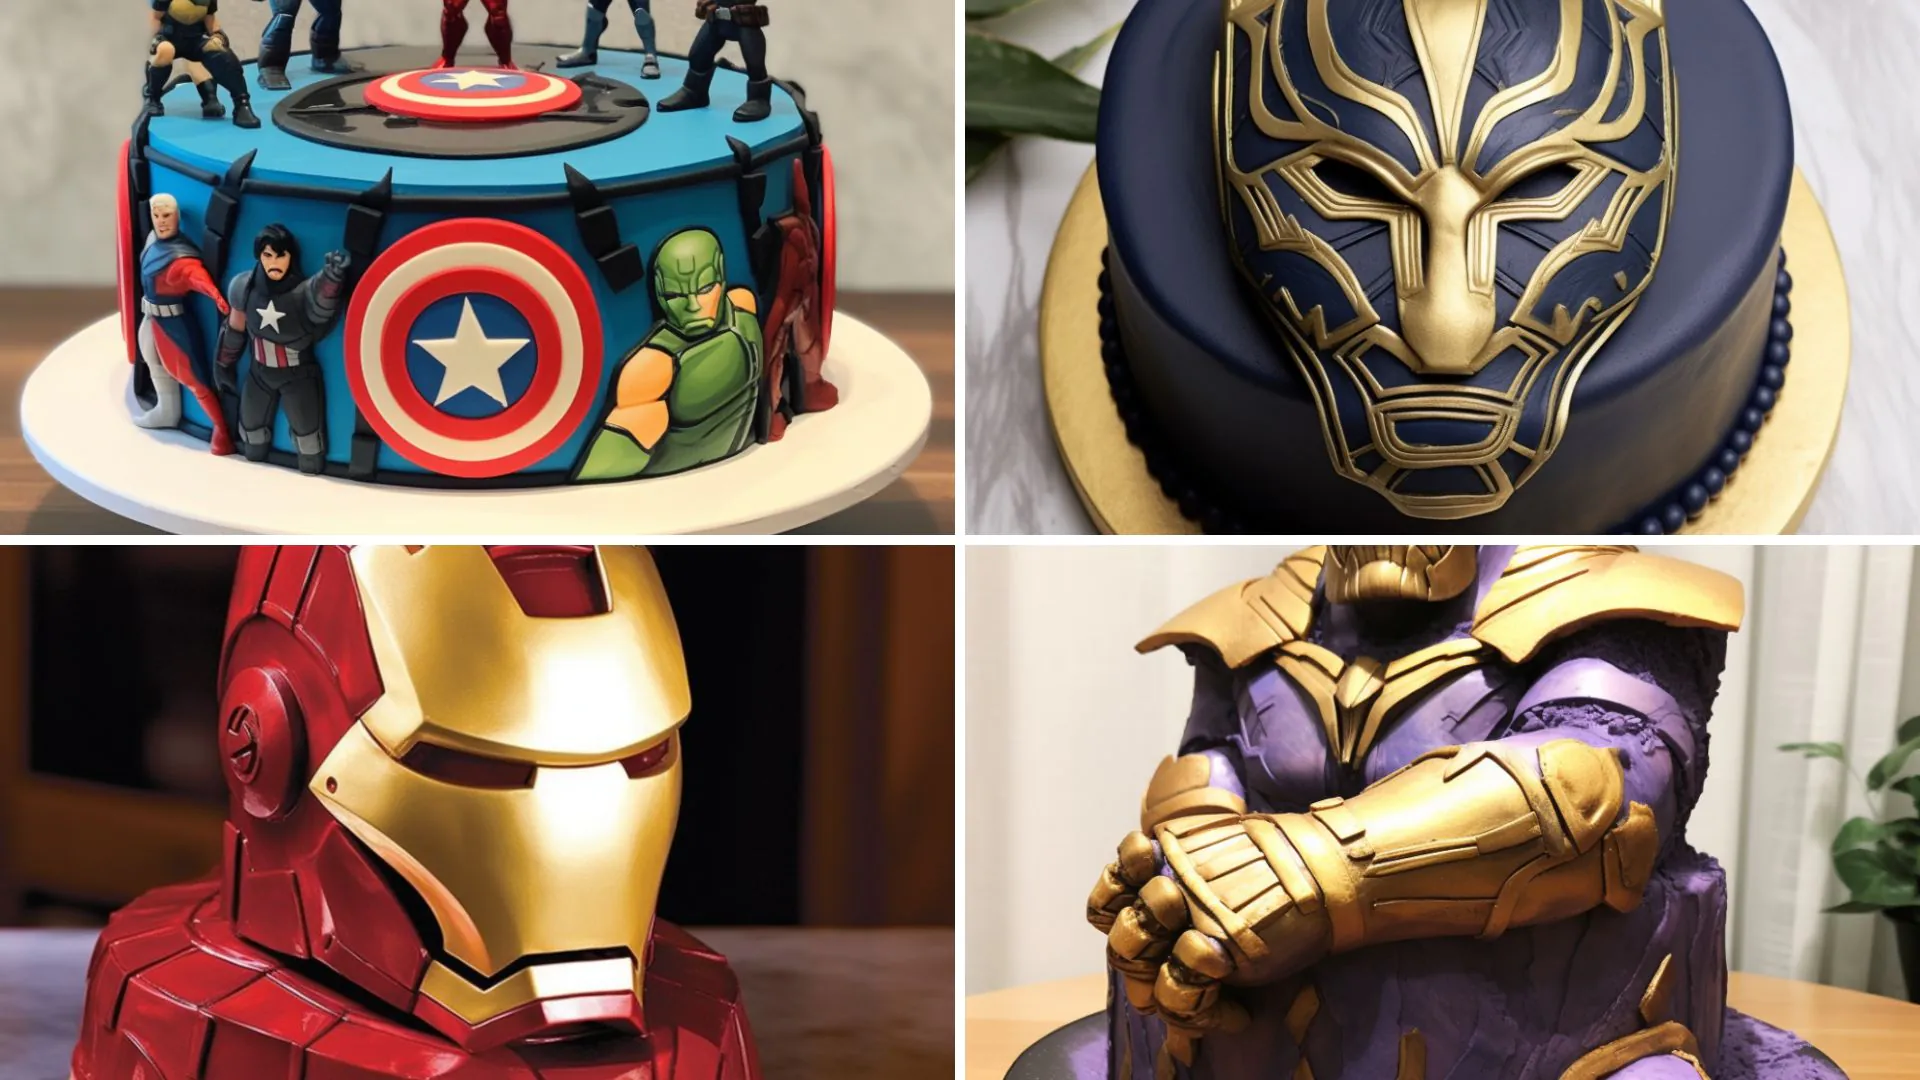 Madhumati Cake House - Thanos gauntlet fondant topper ...  #Madhumaticakehouse | Facebook